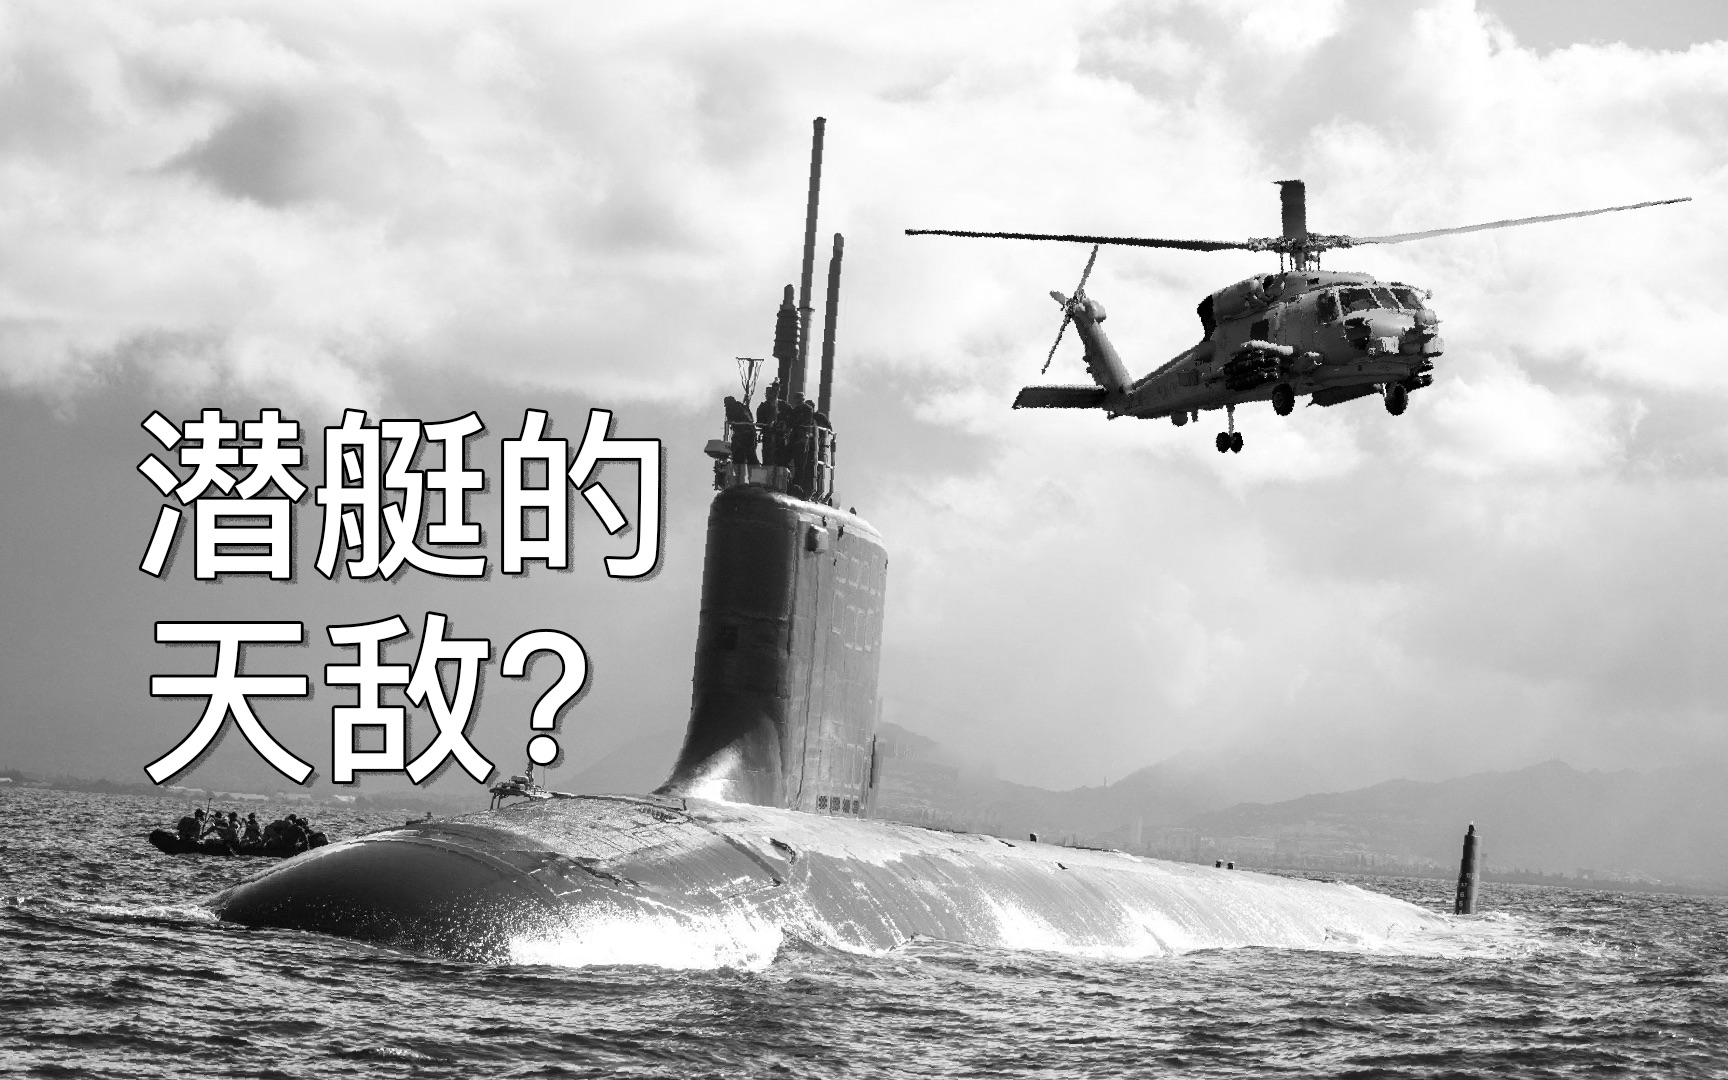 为什么直升机是潜艇的天敌？他如何反潜？